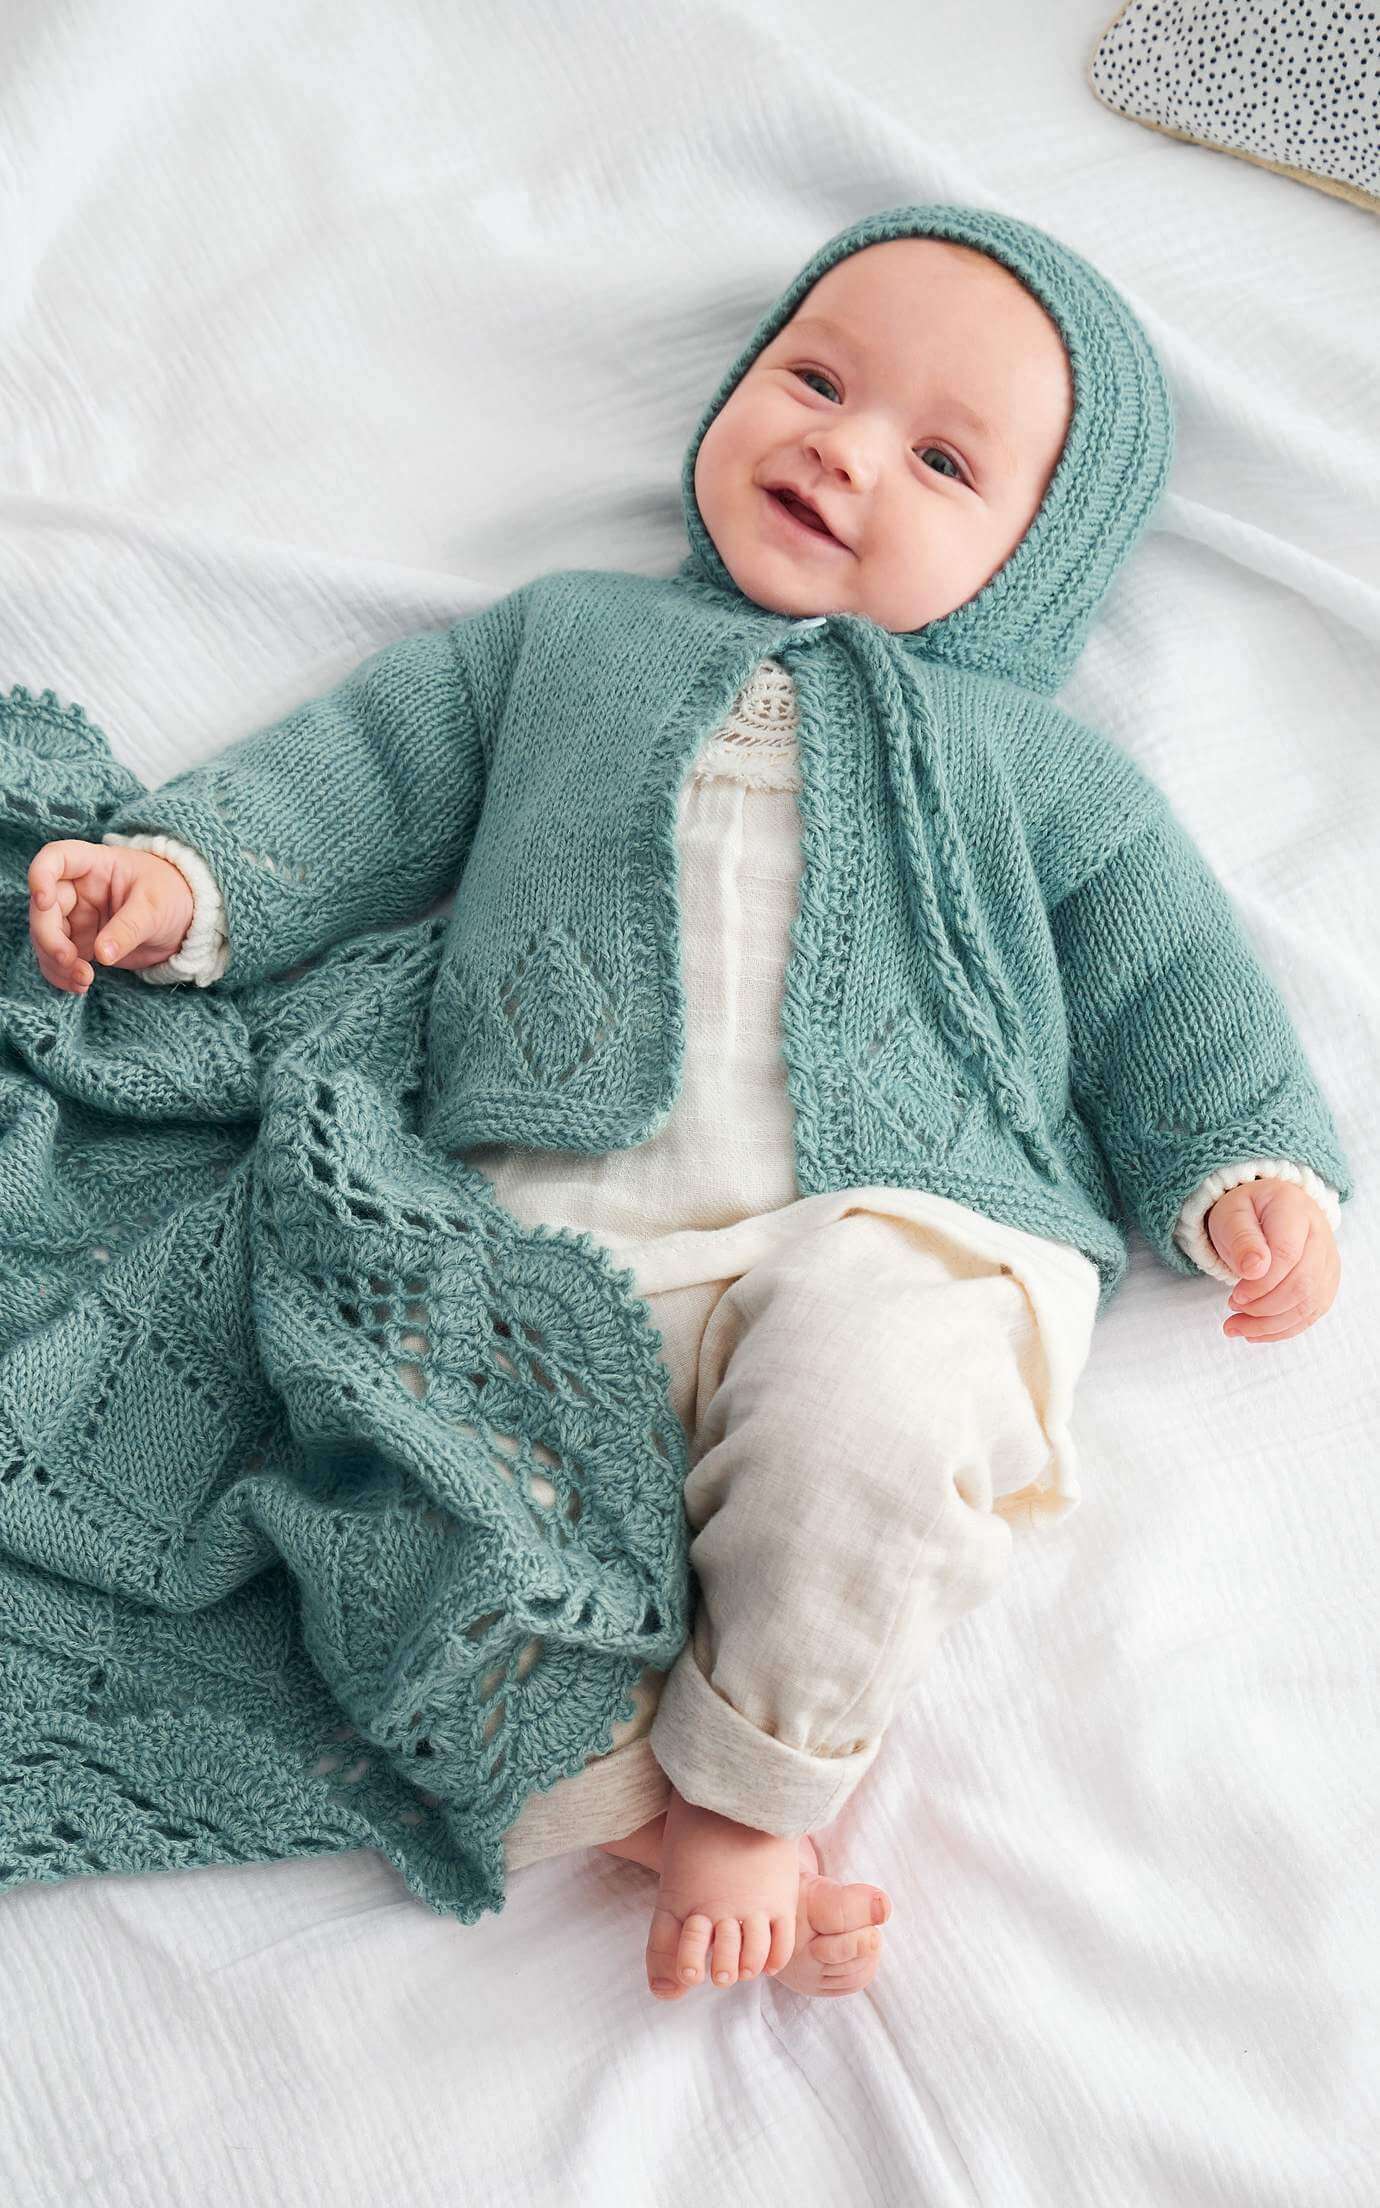 Baby Jacke mit Ajourmuster - Strickset von LANA GROSSA jetzt online kaufen bei OONIQUE